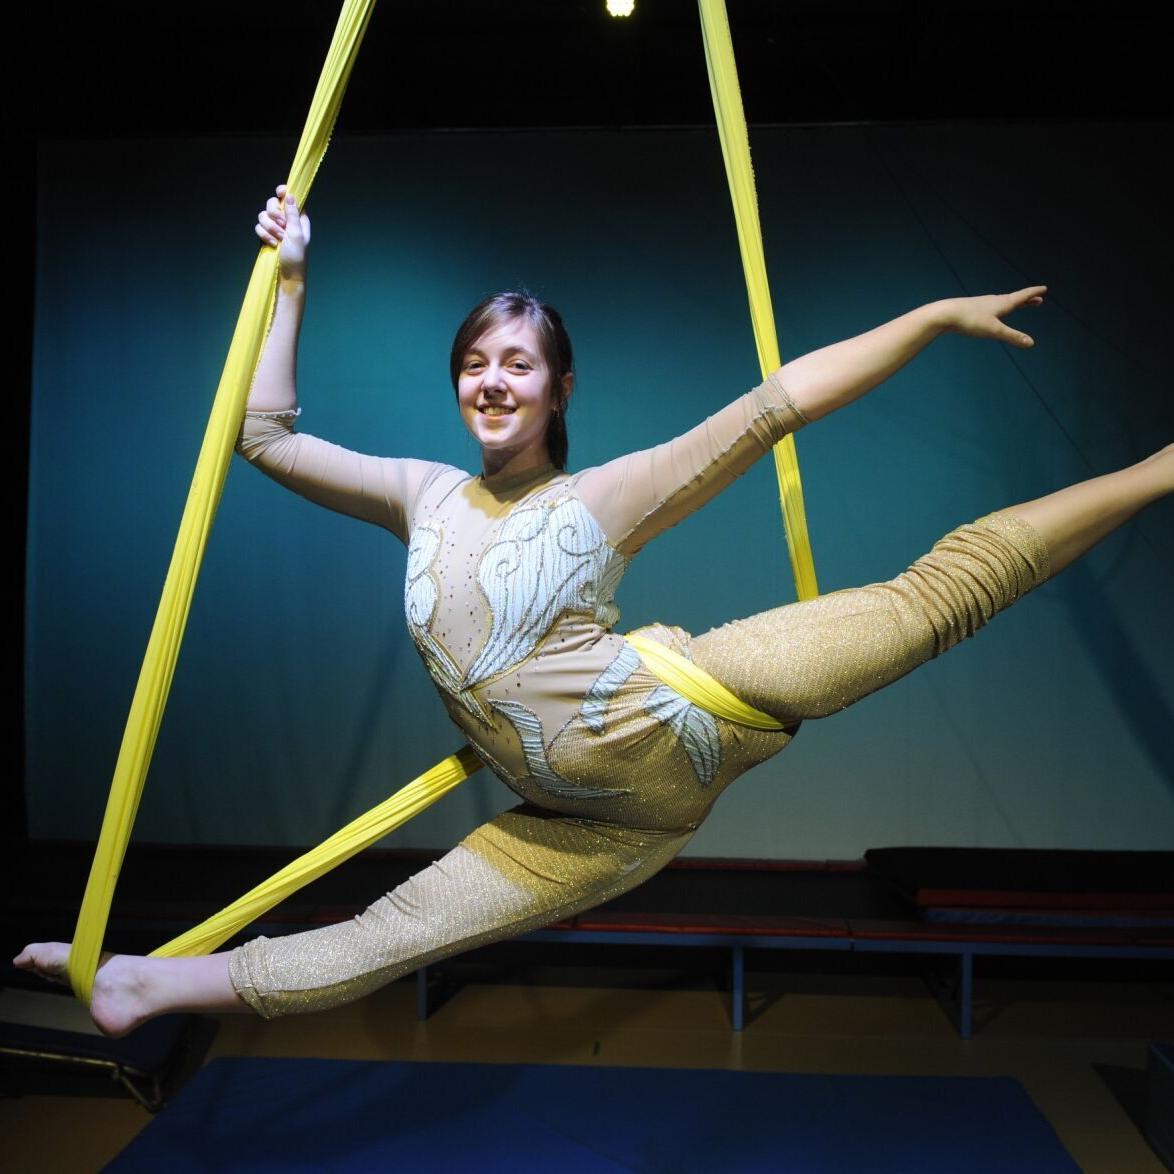 Aerial Silk Hammock, Juggling & Circus